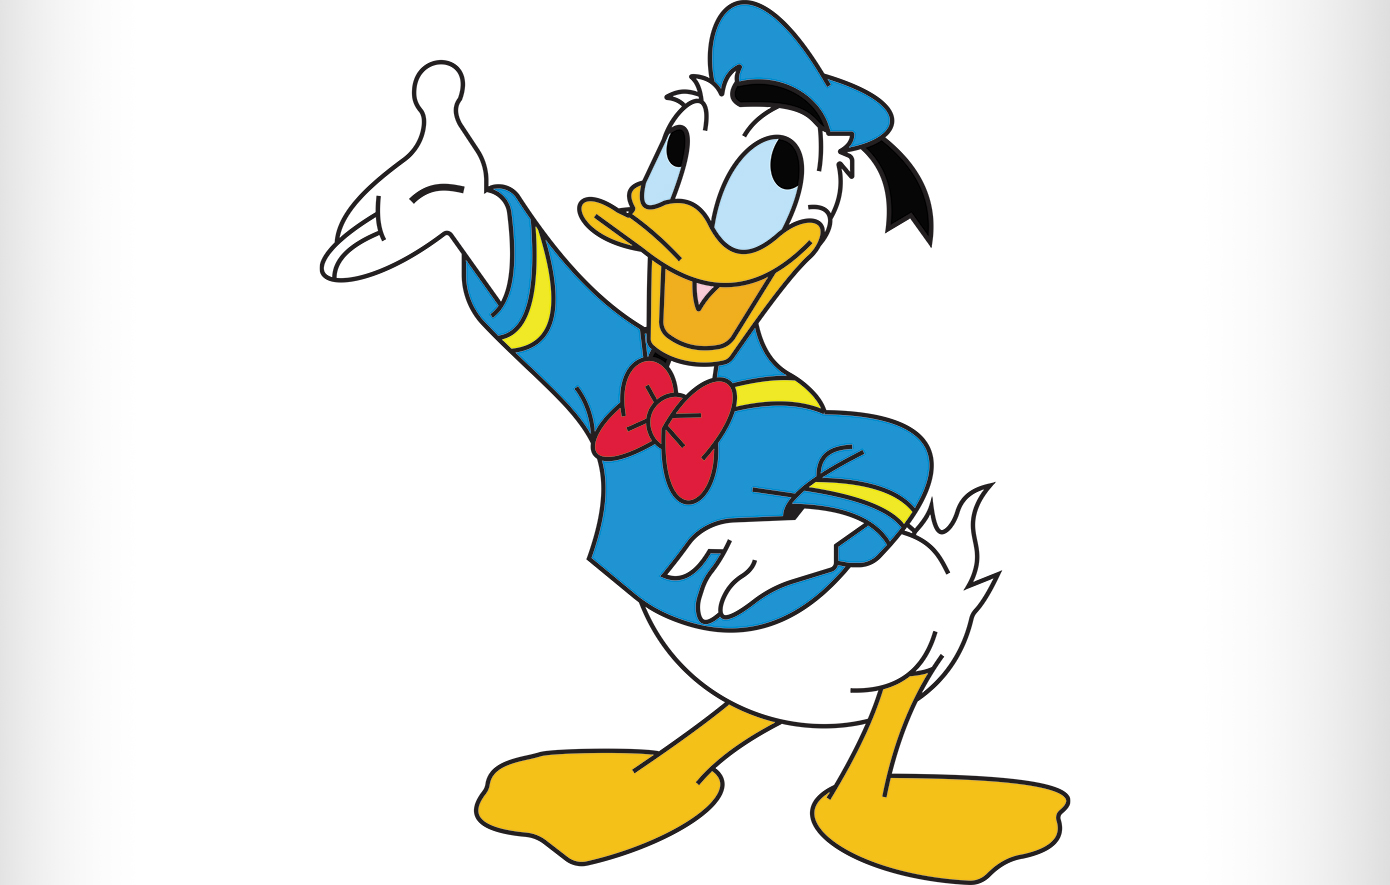 Σαν σήμερα 9 Ιουνίου: Γεννιέται ο Donald Duck, ένα από τους πιο γνωστούς χαρακτήρες της Disney